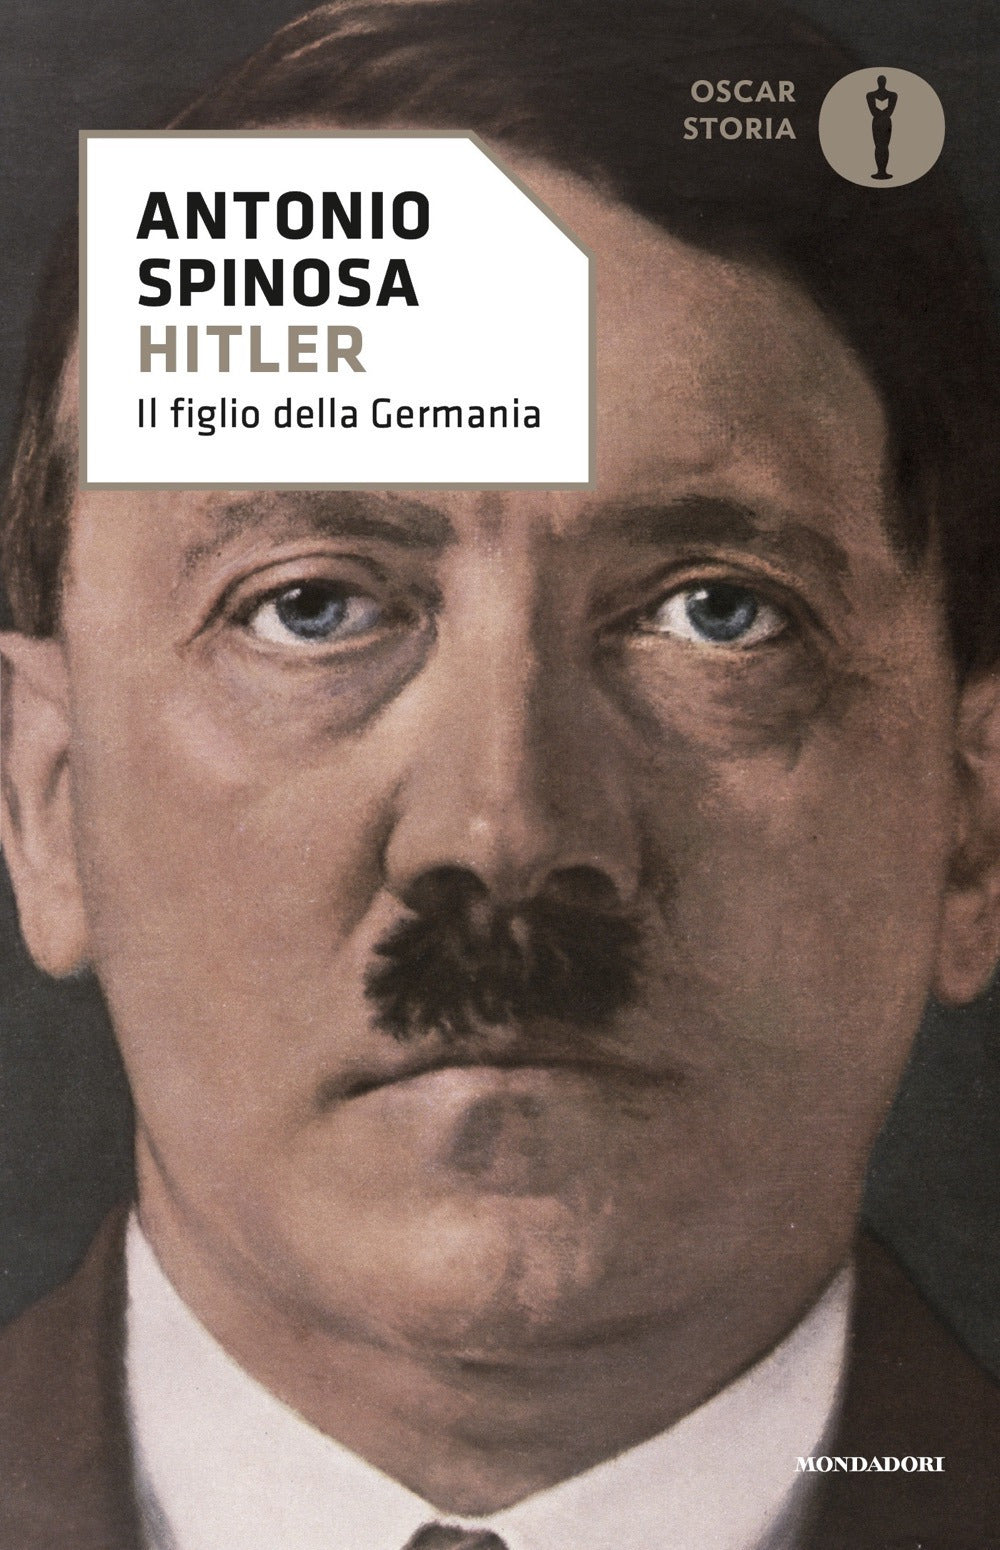 Hitler.